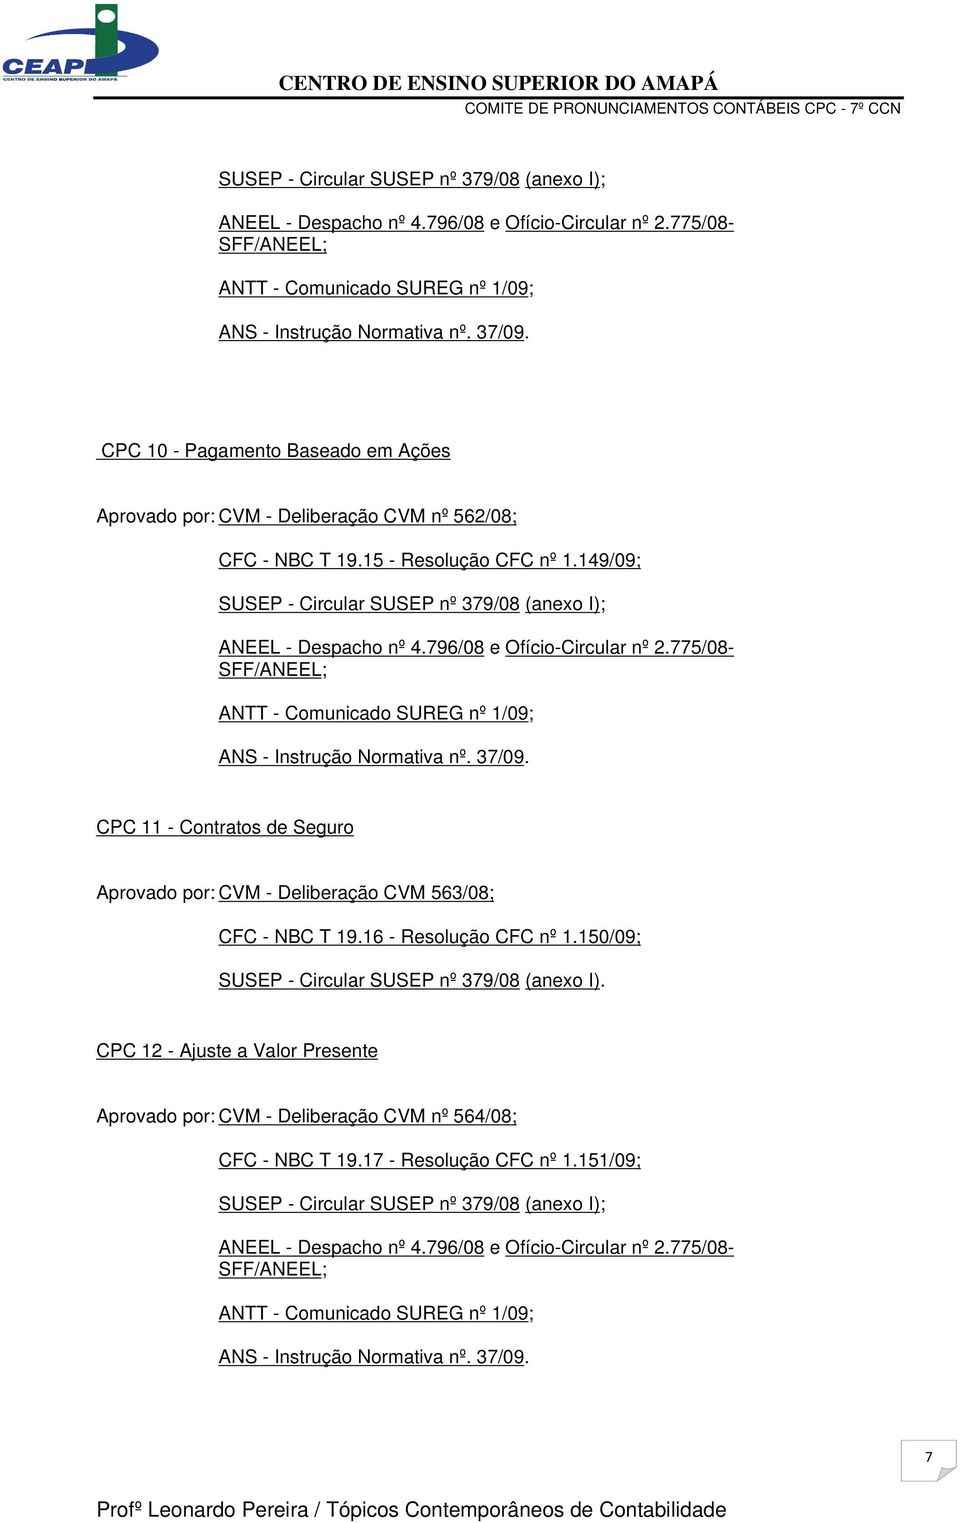 149/09; CPC 11 - Contratos de Seguro Aprovado por: CVM - Deliberação CVM 563/08; CFC - NBC T 19.